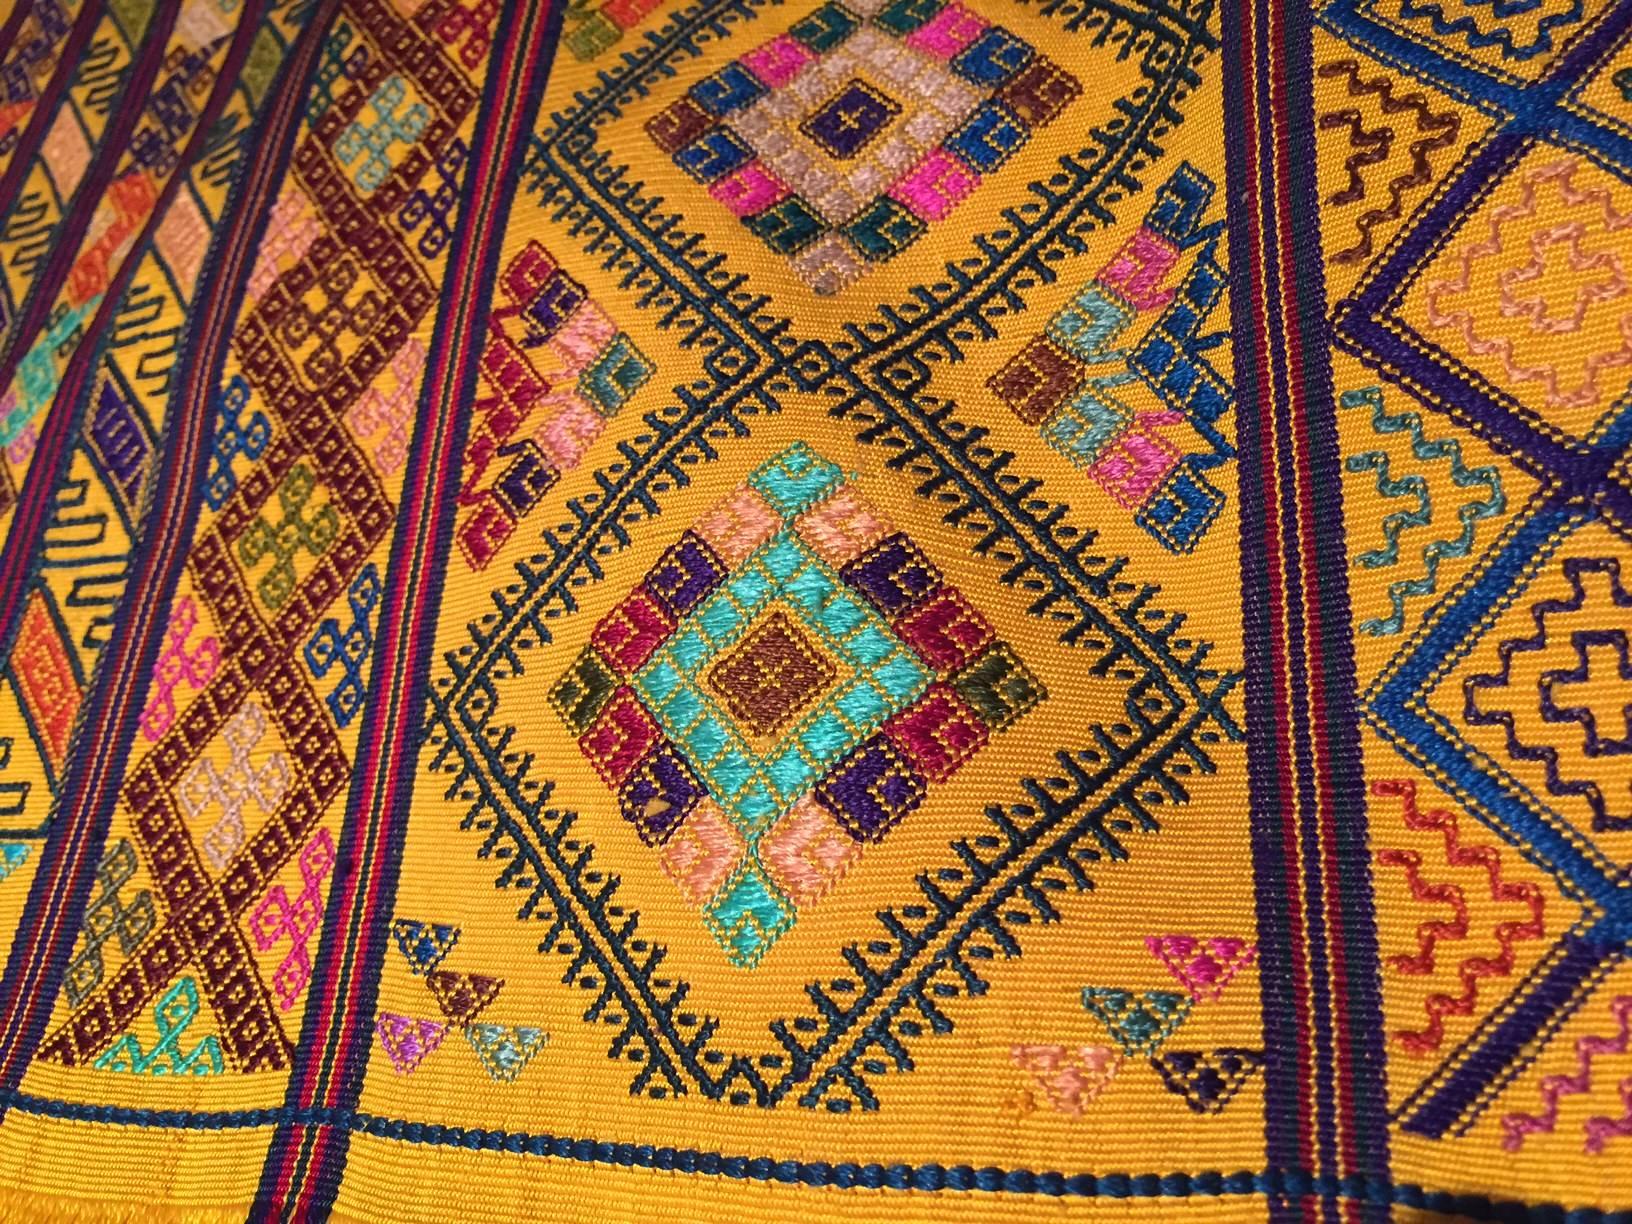 bhutan textiles for sale